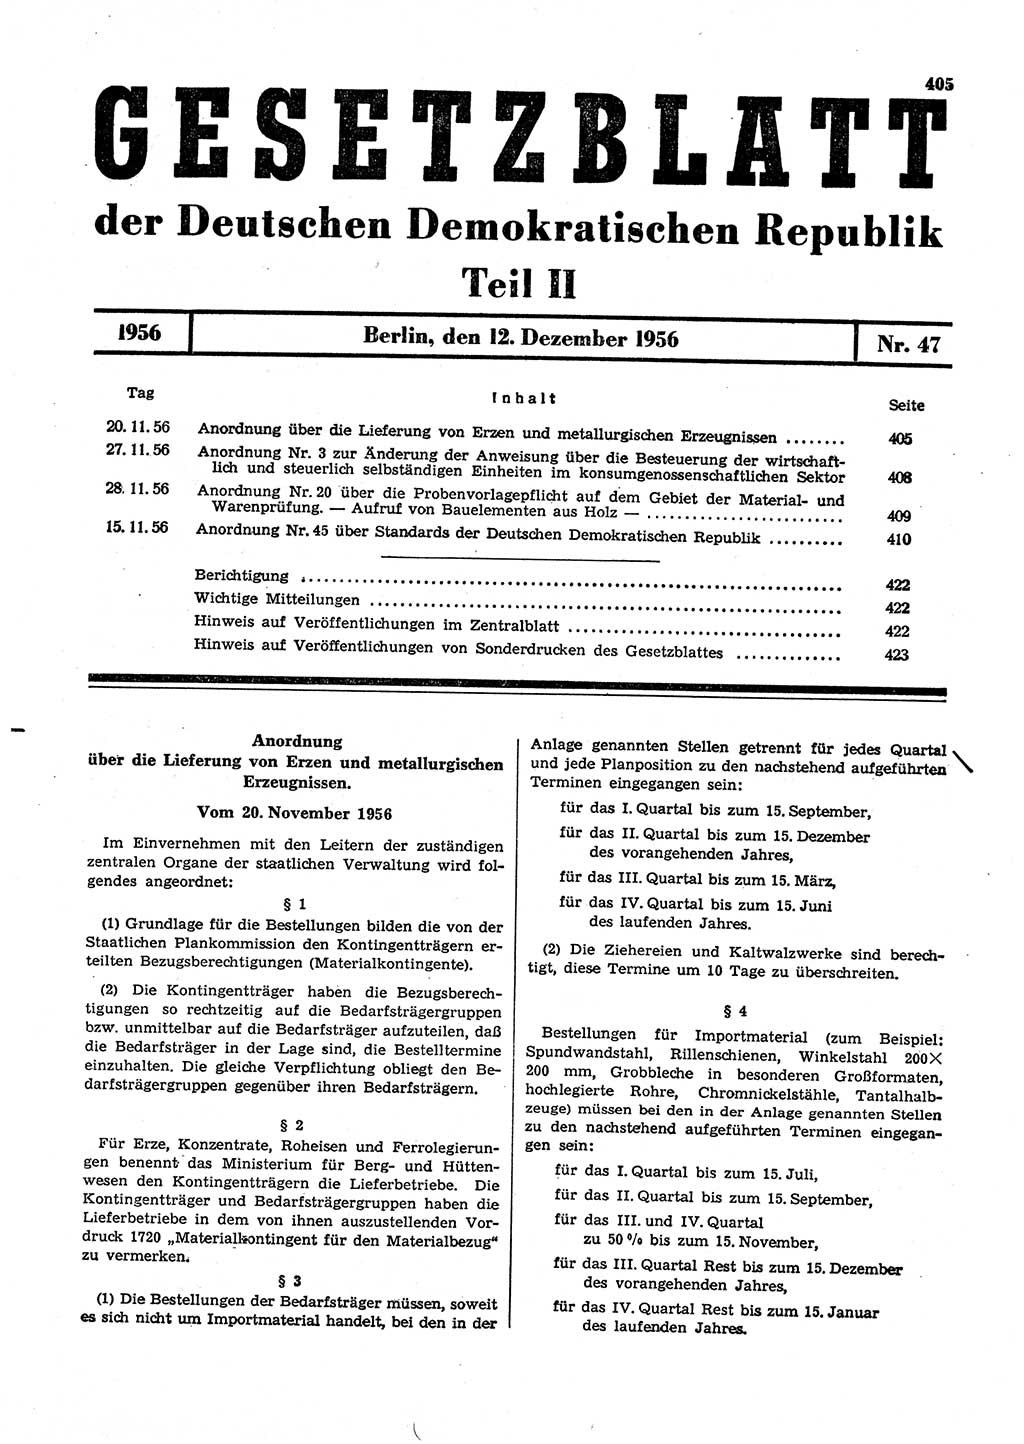 Gesetzblatt (GBl.) der Deutschen Demokratischen Republik (DDR) Teil ⅠⅠ 1956, Seite 405 (GBl. DDR ⅠⅠ 1956, S. 405)